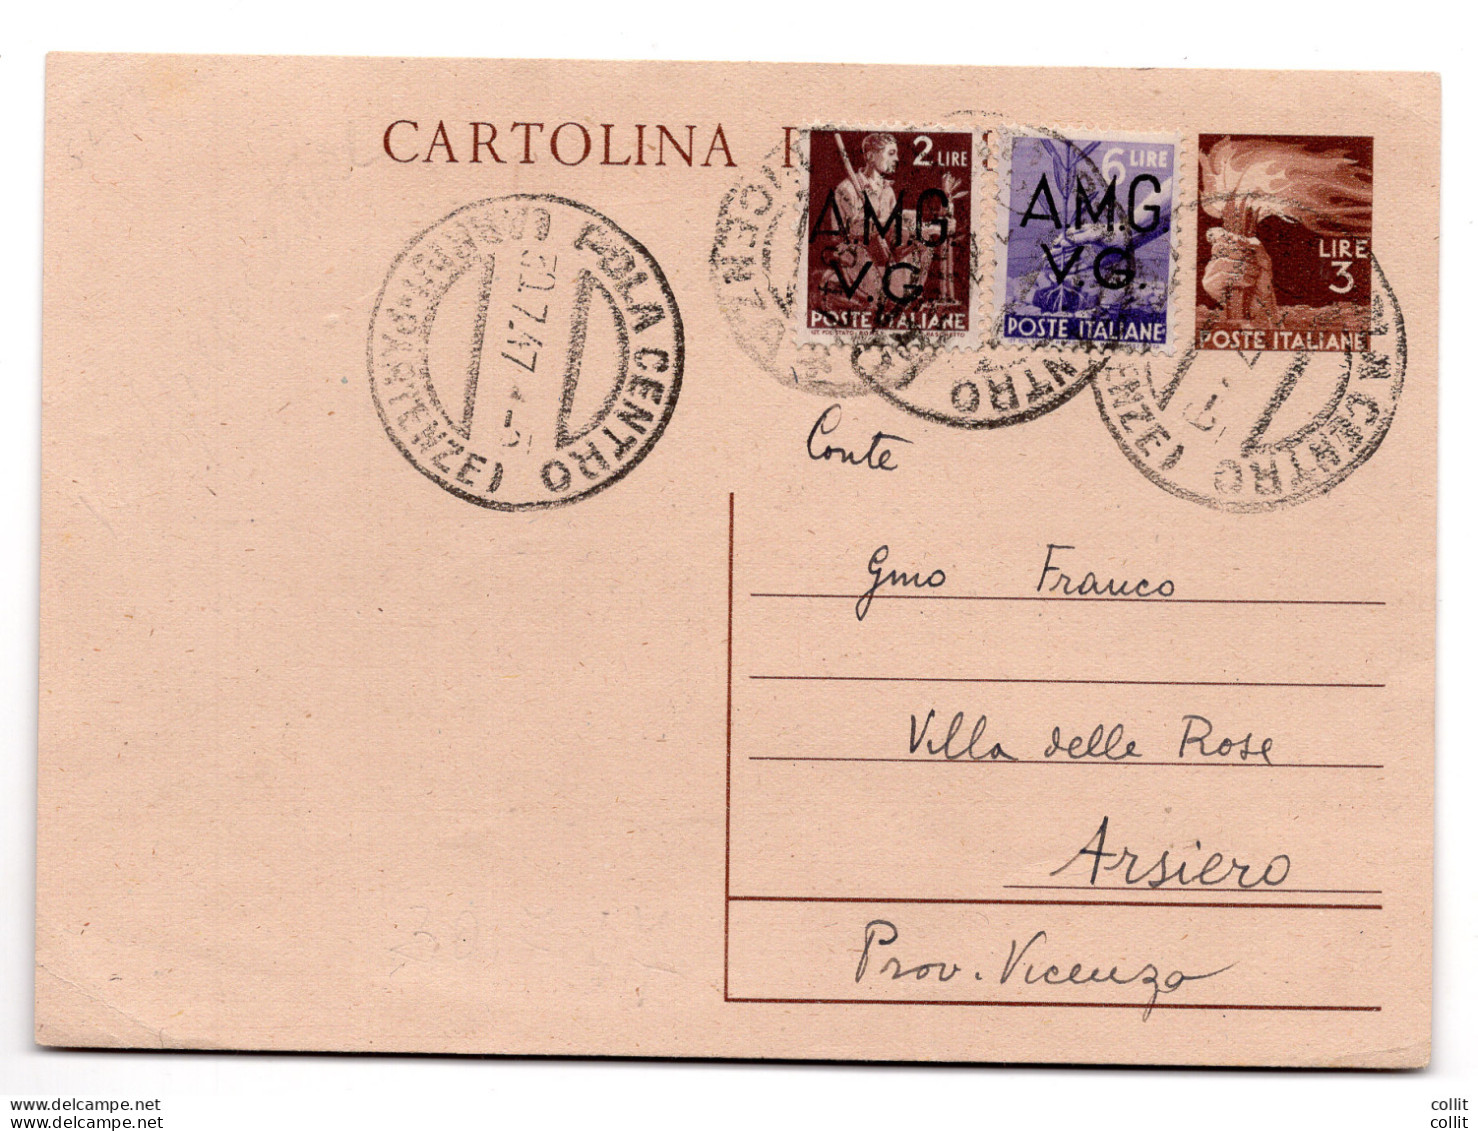 AMG.VG.-Democratica L.6 Cartolina Postale D'Italia Da L.3 Democratica - Nuovi